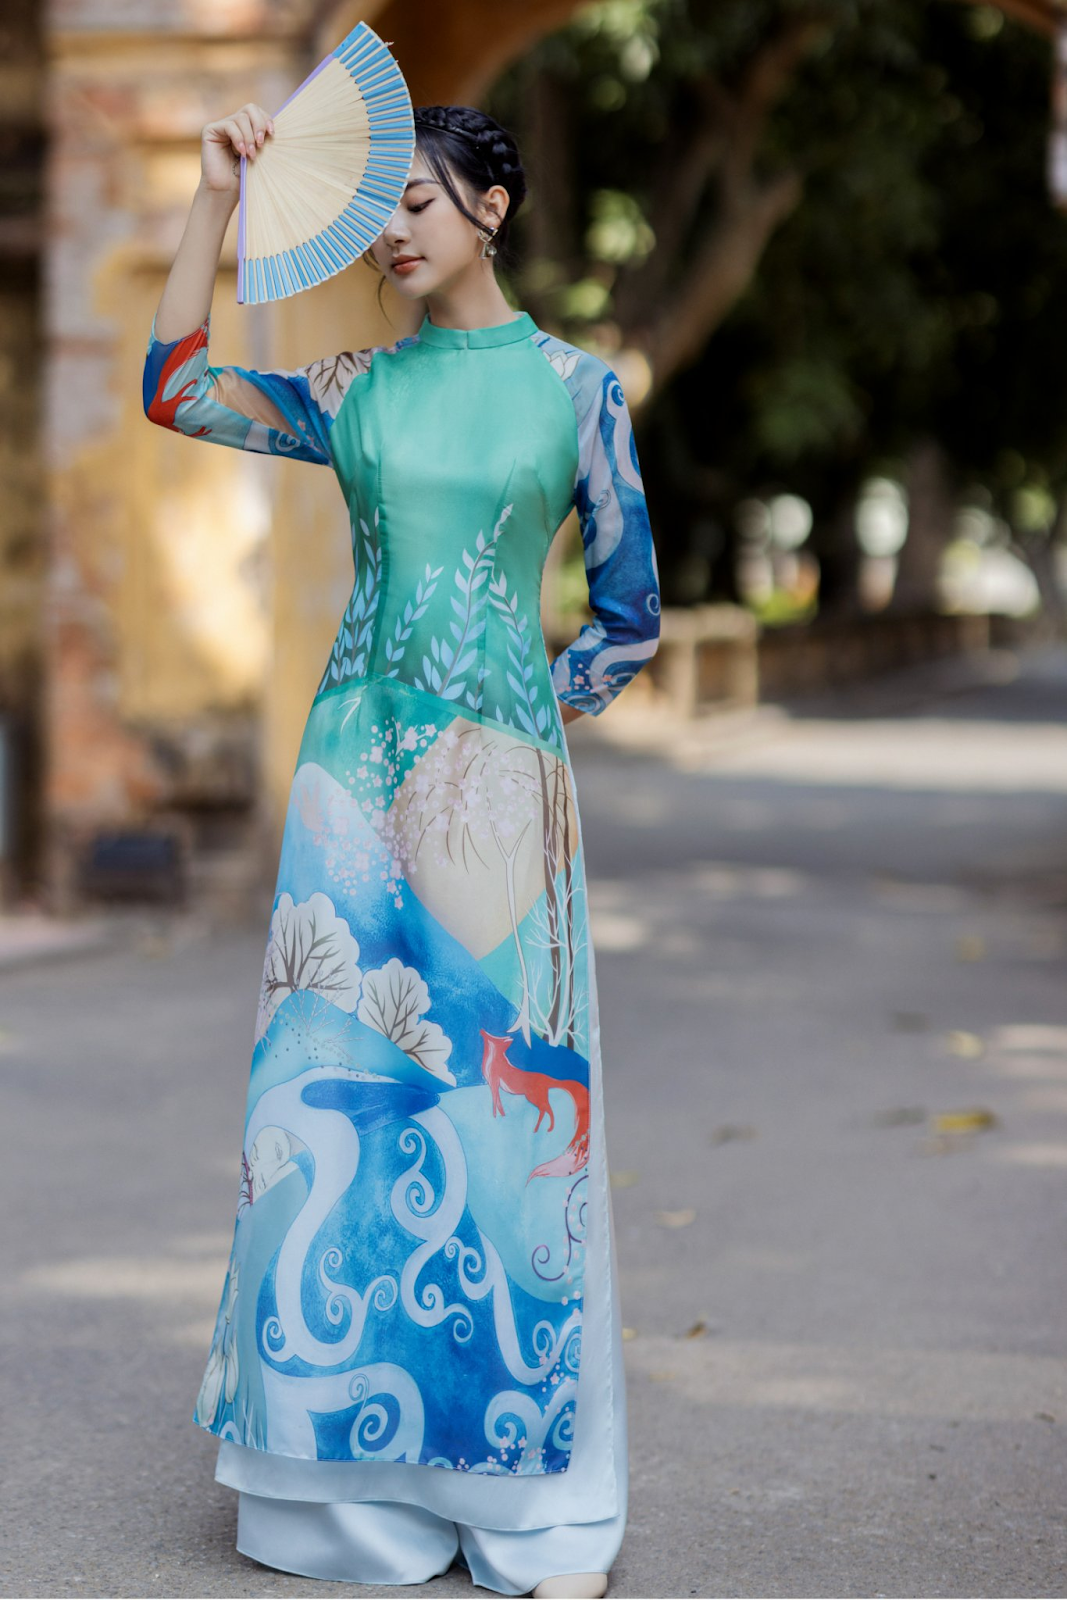 Địa chỉ bán áo dài may sẵn nhiều mẫu đẹp tại Sài Gòn